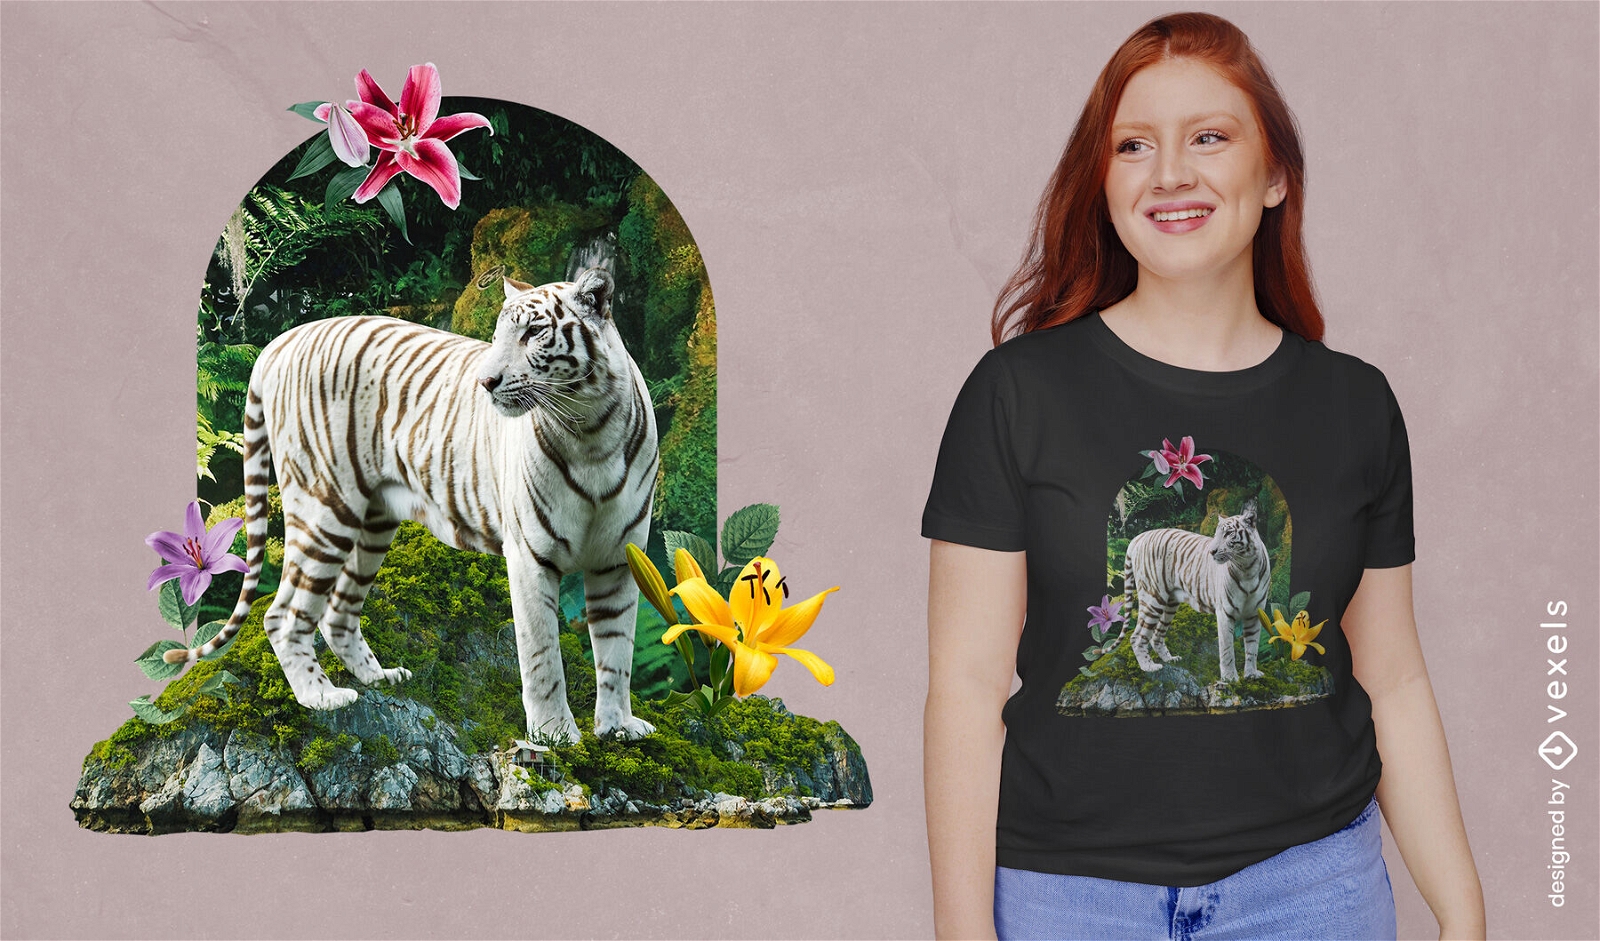 Animal tigre blanco en dise?o de camiseta de jard?n de flores.